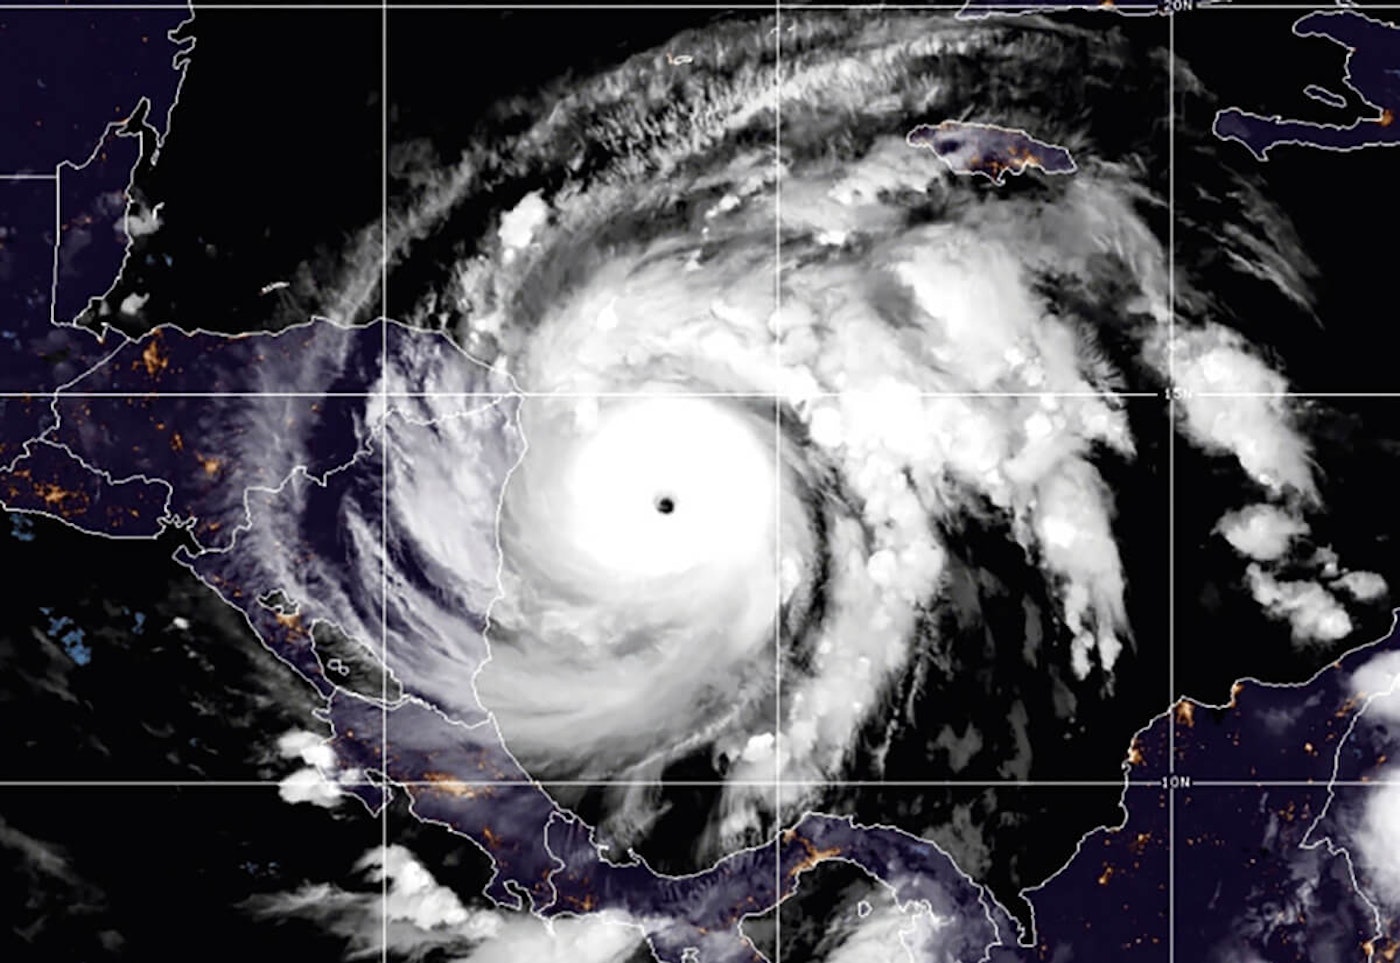 Image via NOAA/AP.